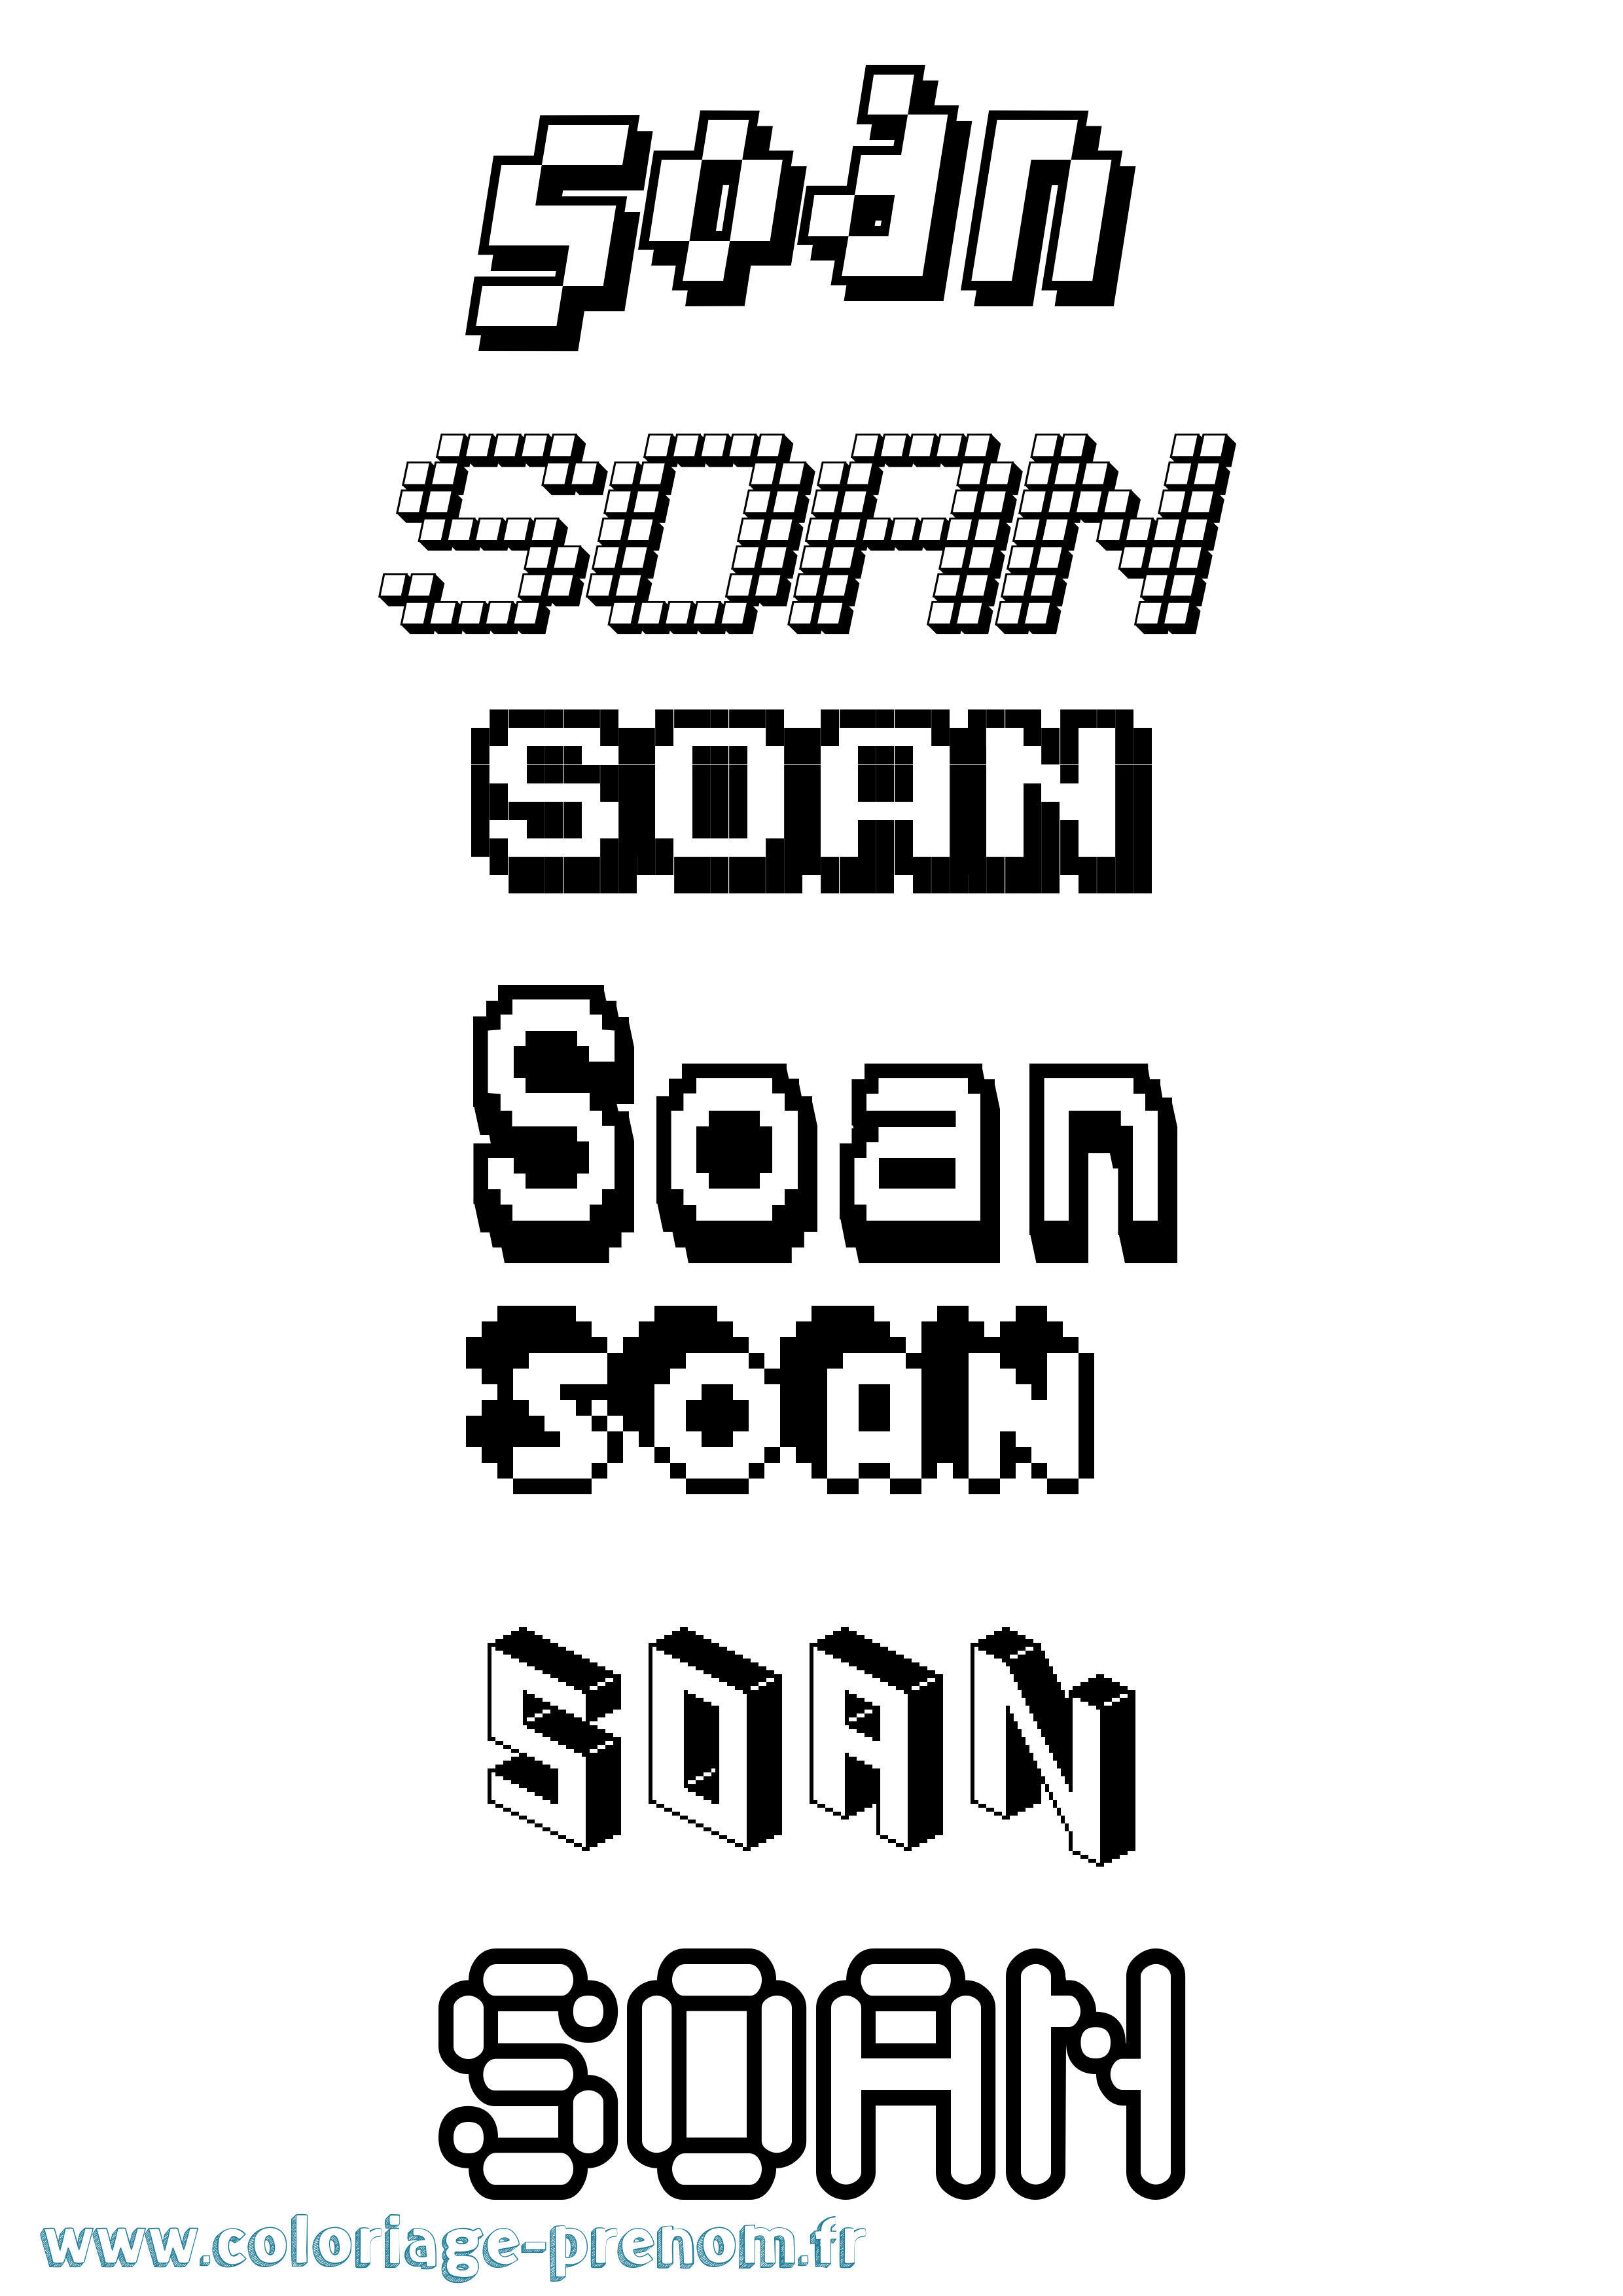 Coloriage prénom Soan